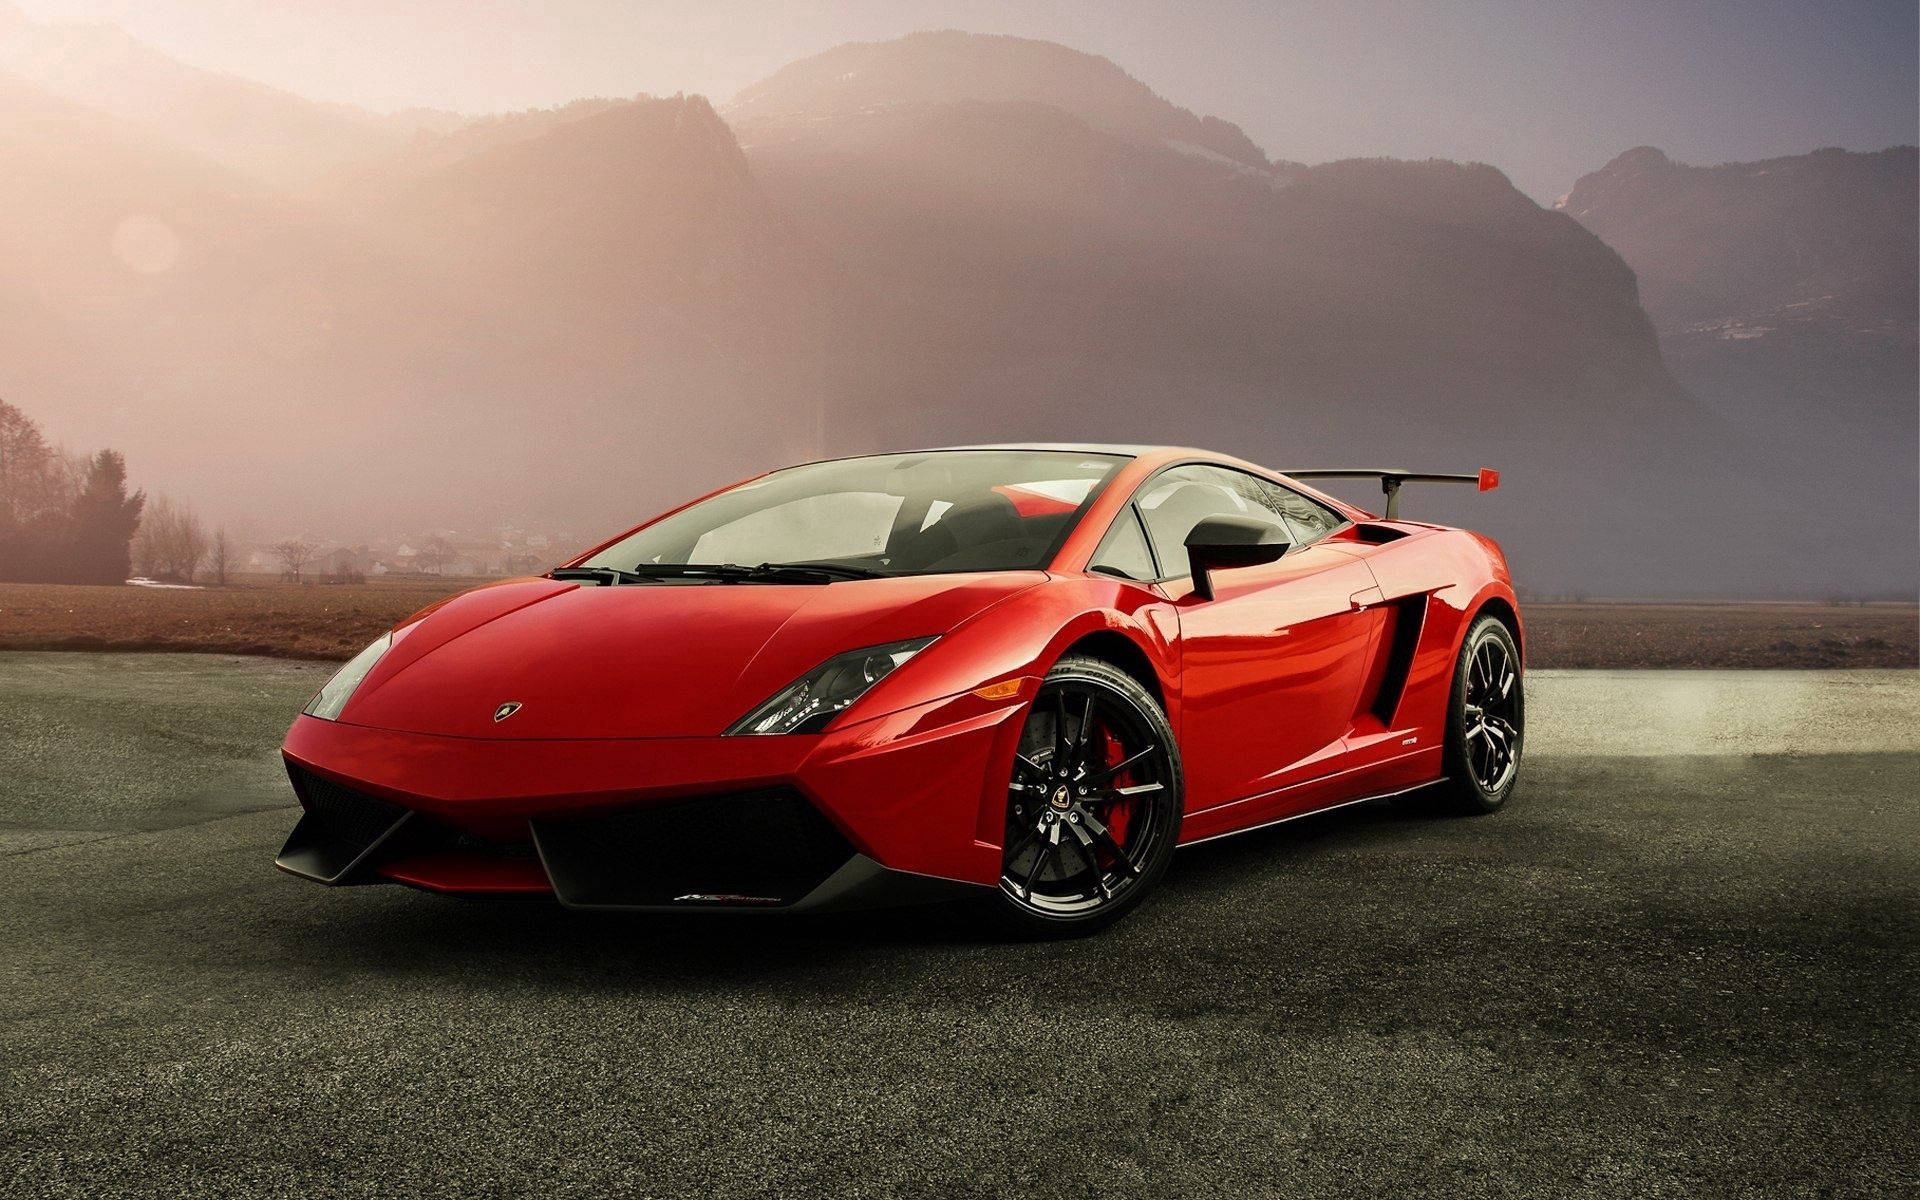 "Explore the world in your red Lamborghini Gallardo" Wallpaper